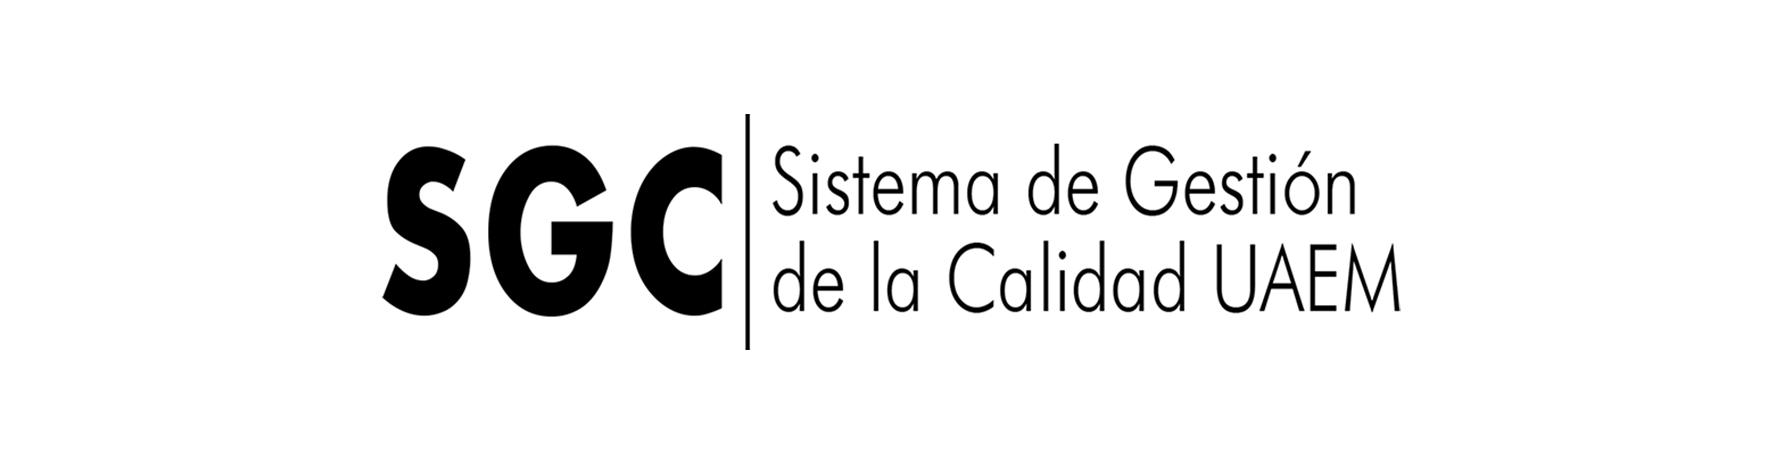 Logo UAEM